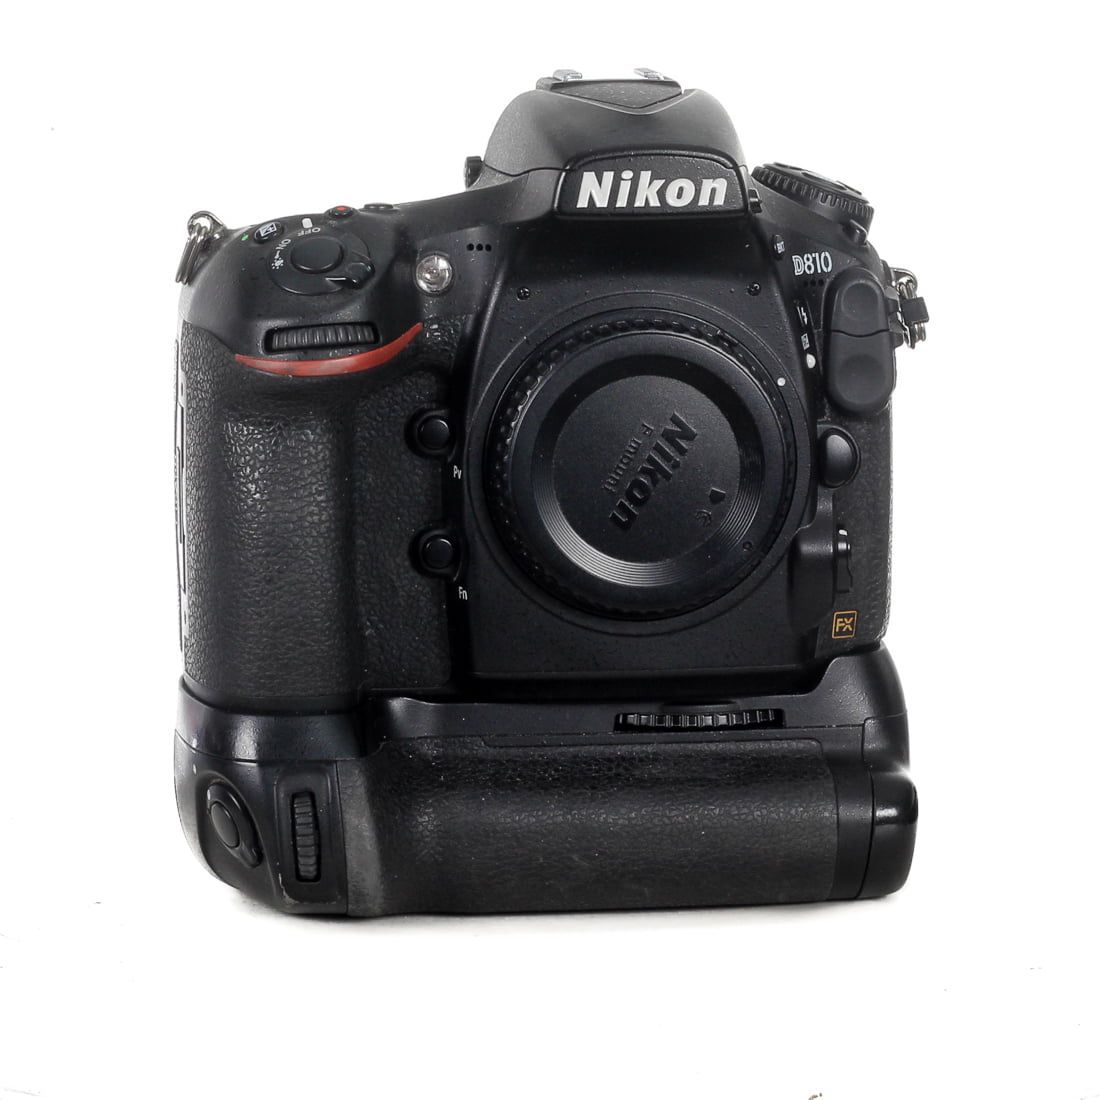 MYYTY Käytetty Nikon D810 järjestelmäkamera [sc: 30 700]